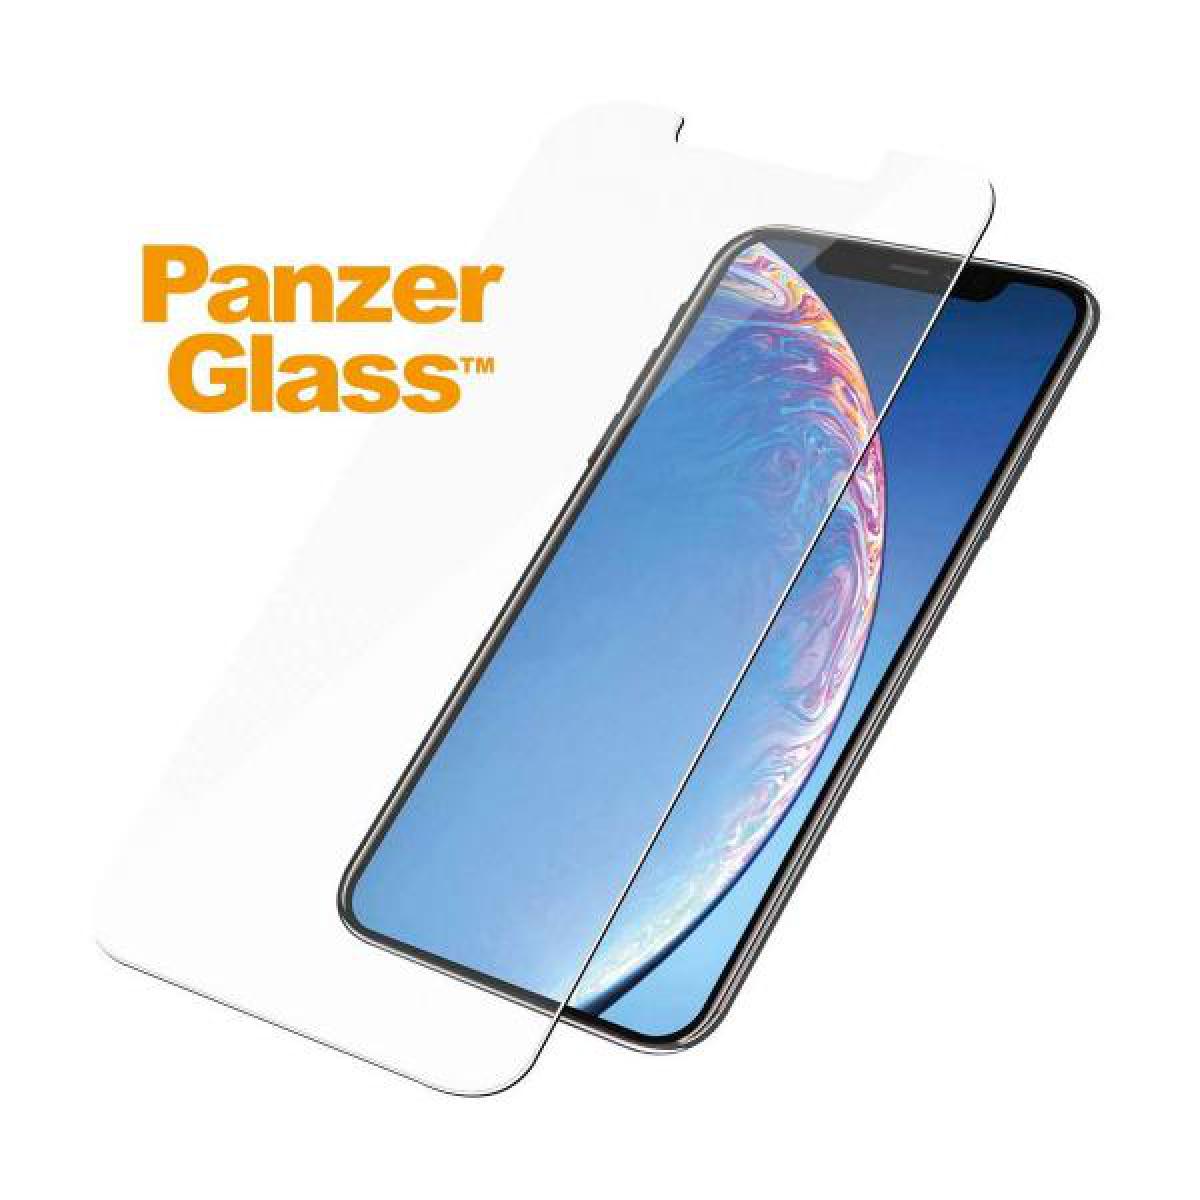 Panzerglass - Panzerglass Protector De Cristal Apple Iphone 11 Pro - Bracelet connecté